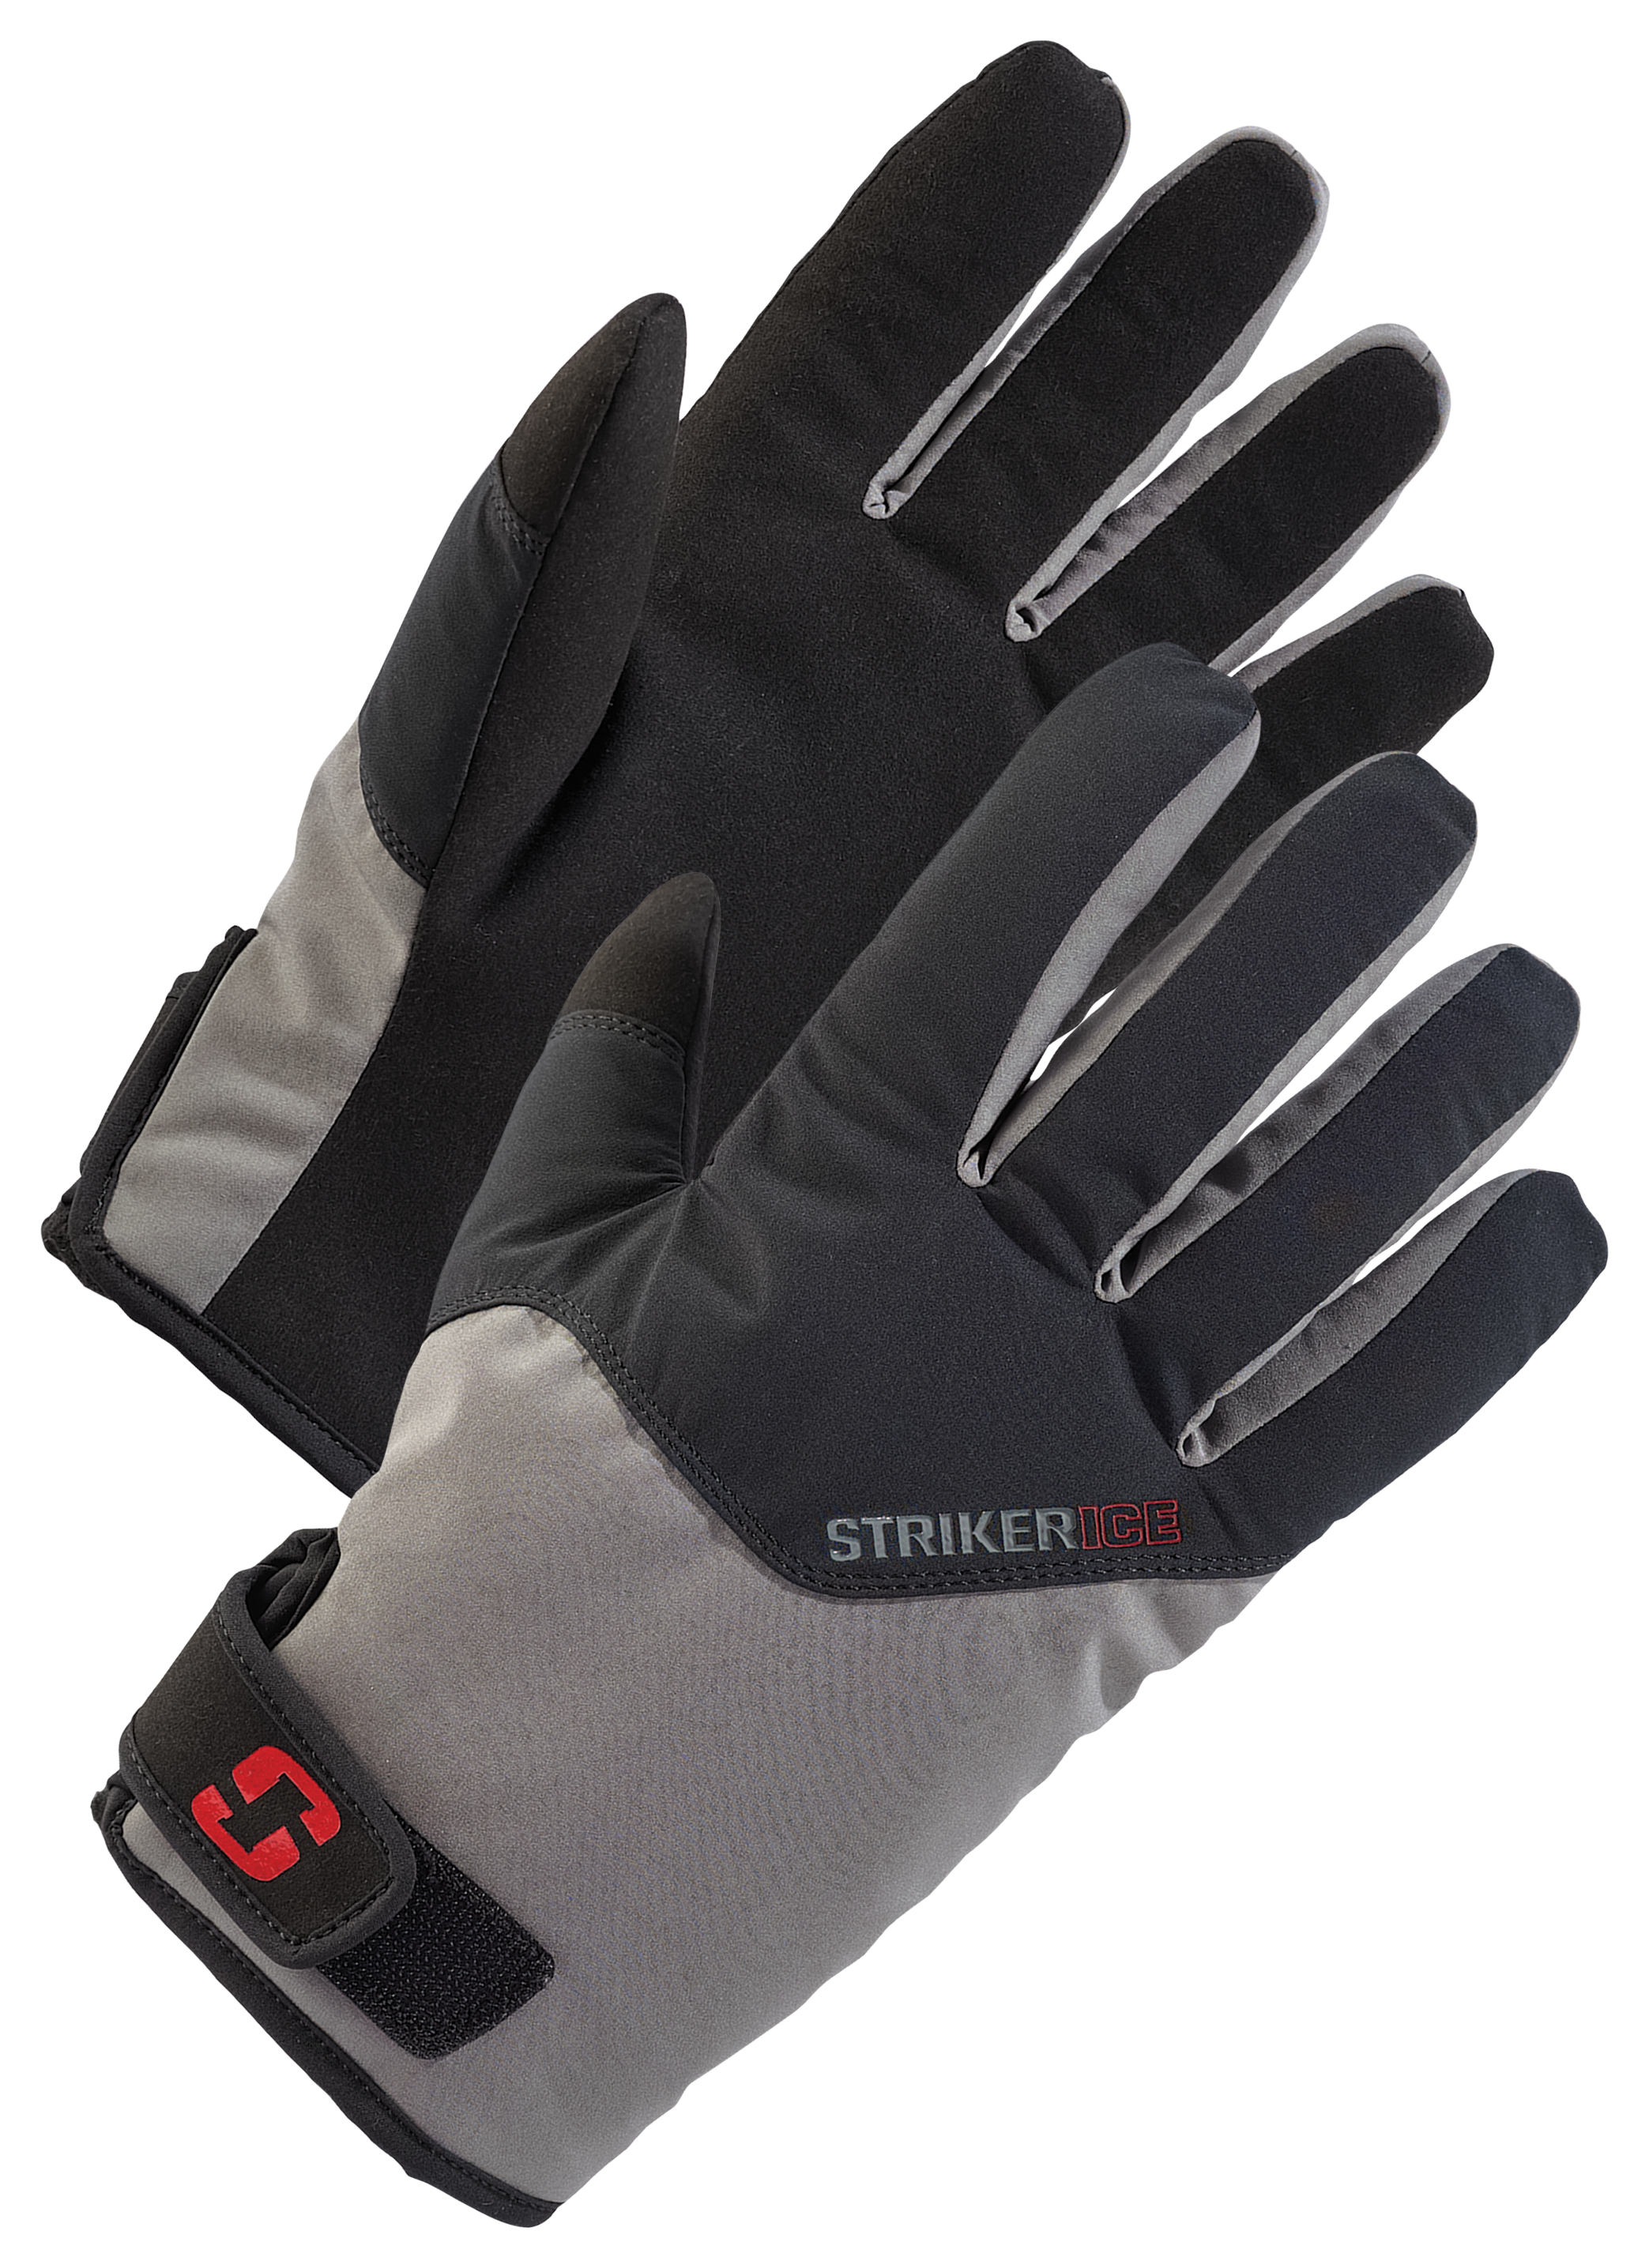 StrikerIce Attack Gloves